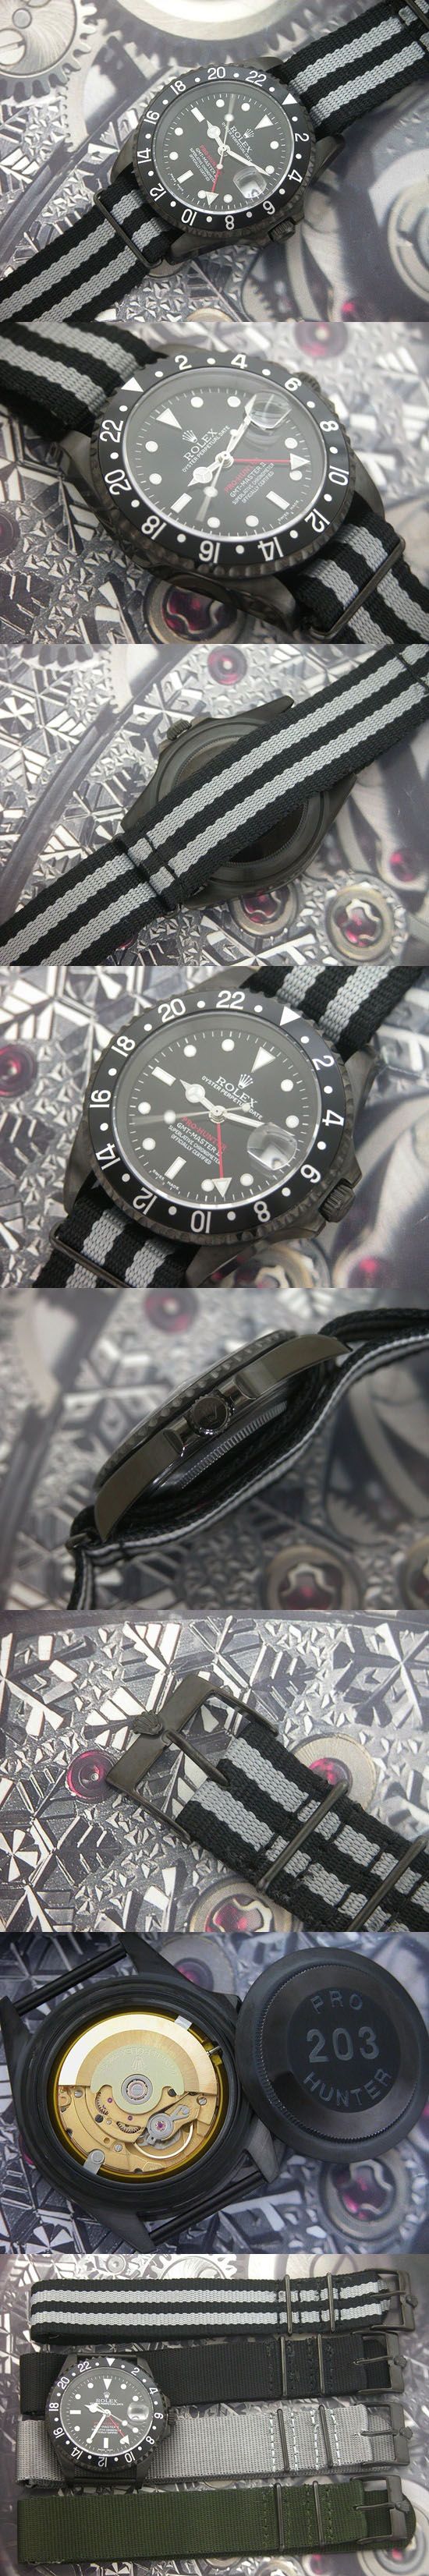 おしゃれなブランド時計がロレックス-GMTマスターII-ROLEX-116718-2-男性用-JPを提供します.